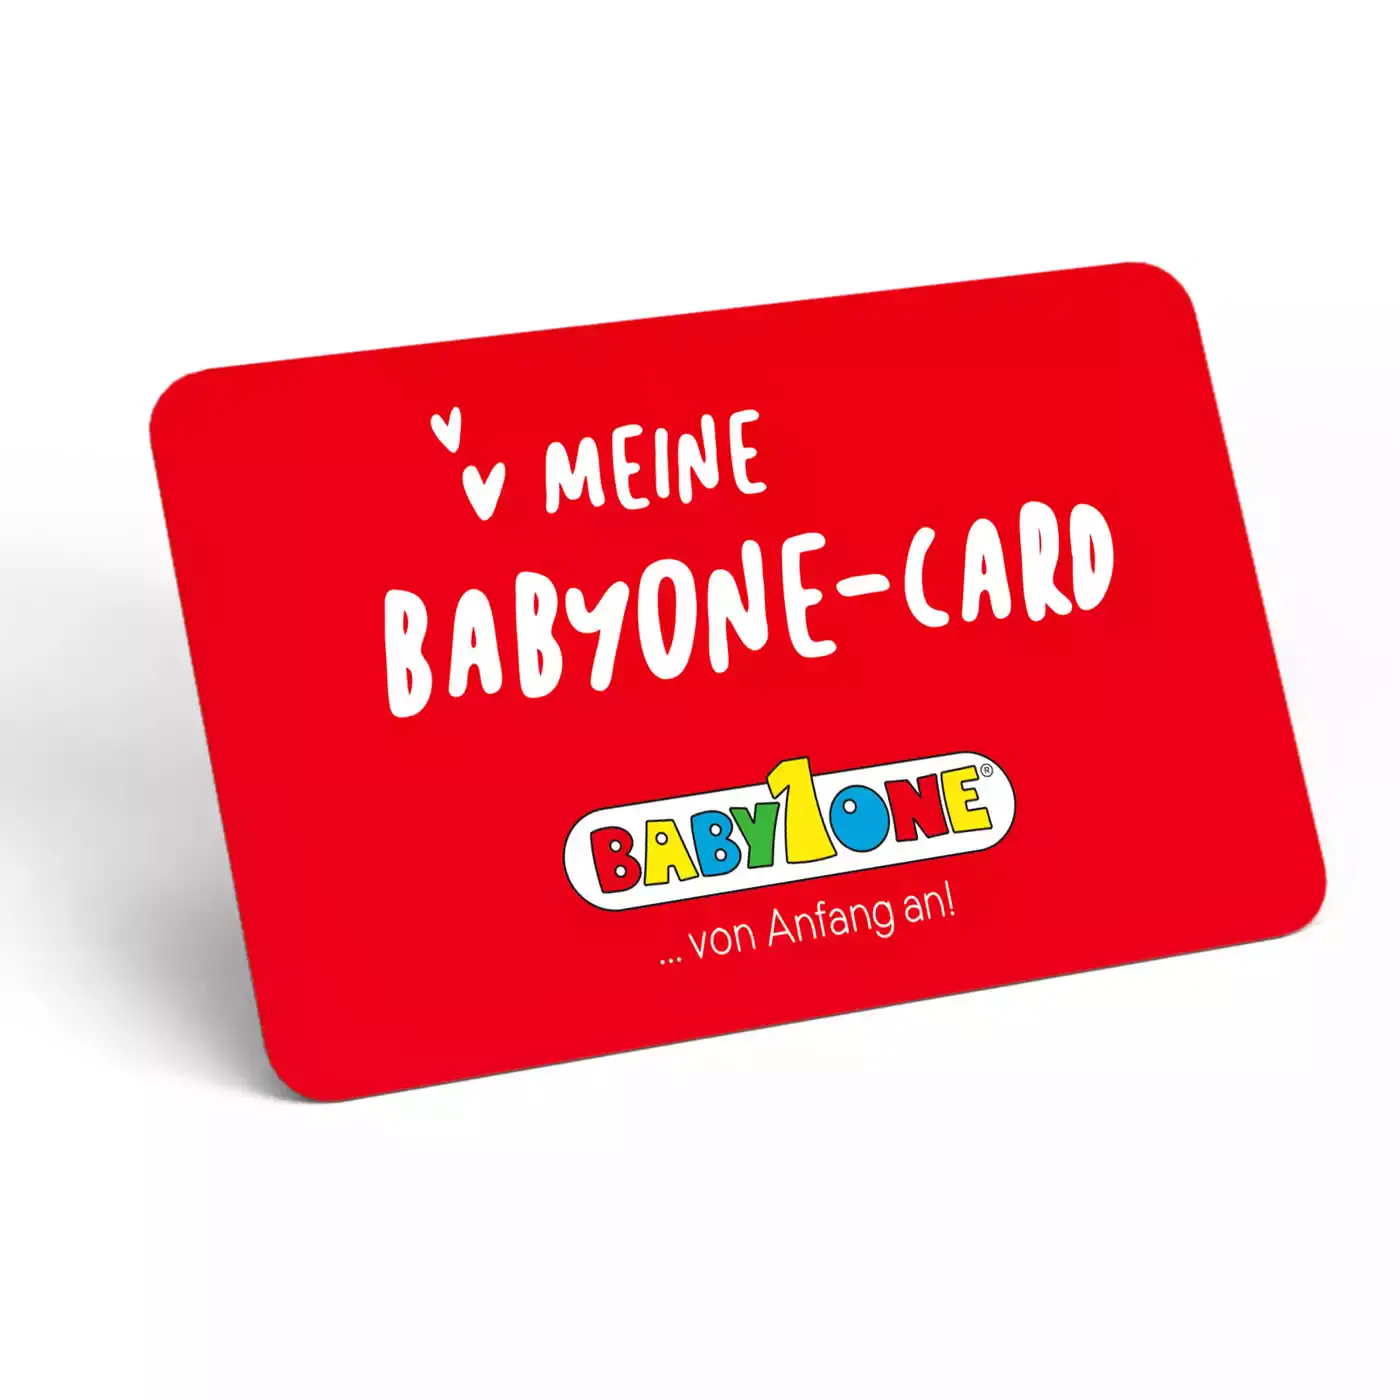 BabyOne-Card